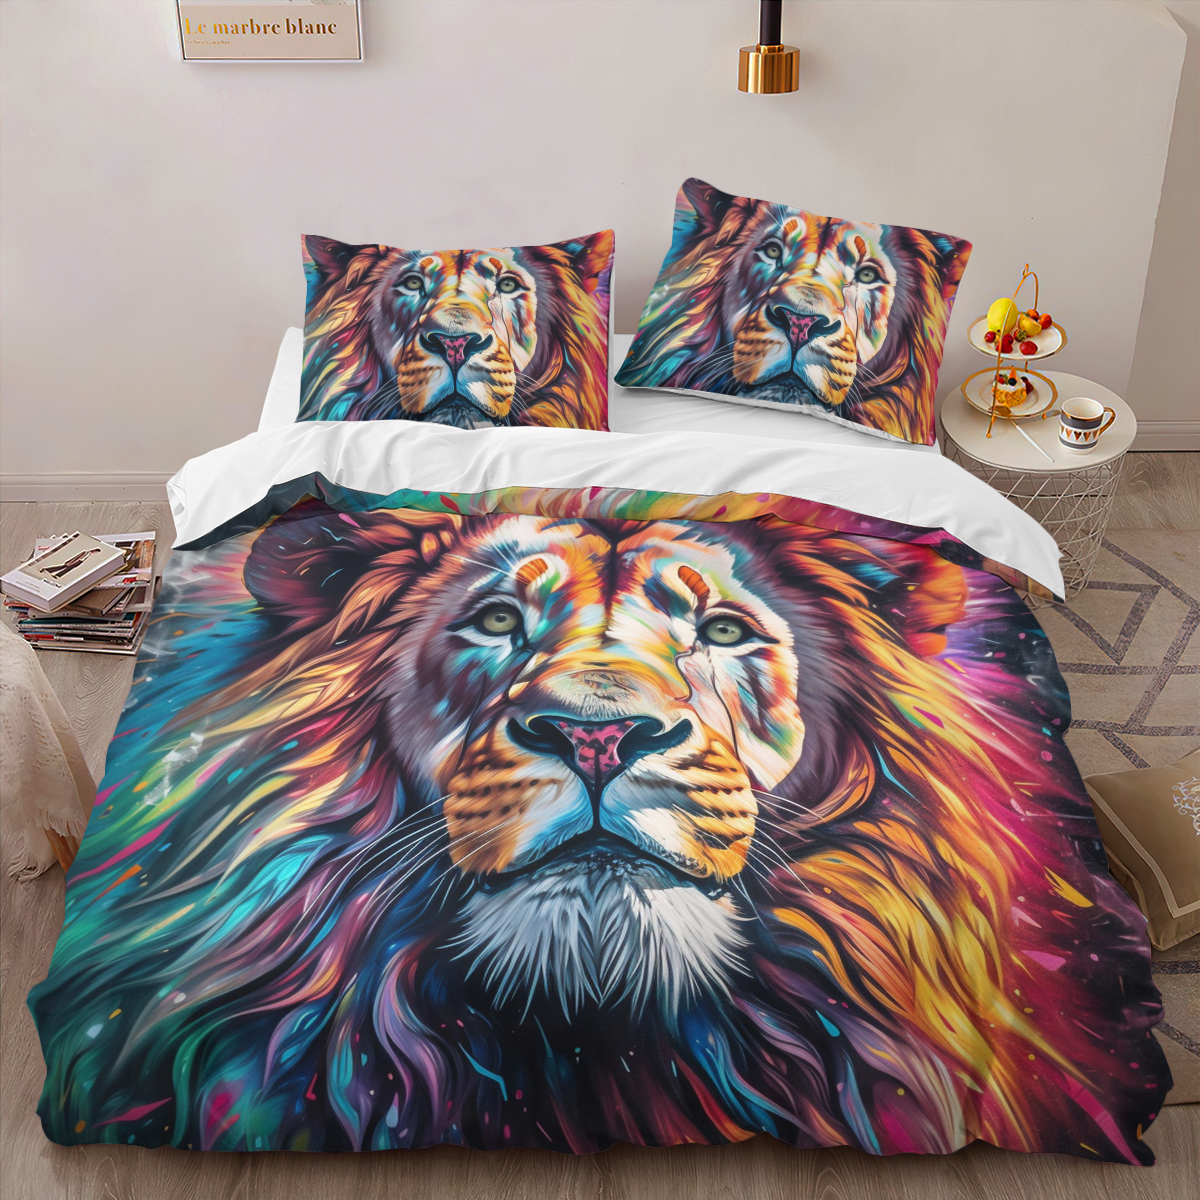 Lion Bedding Set - Lion Duvet Cover & Pillow Case